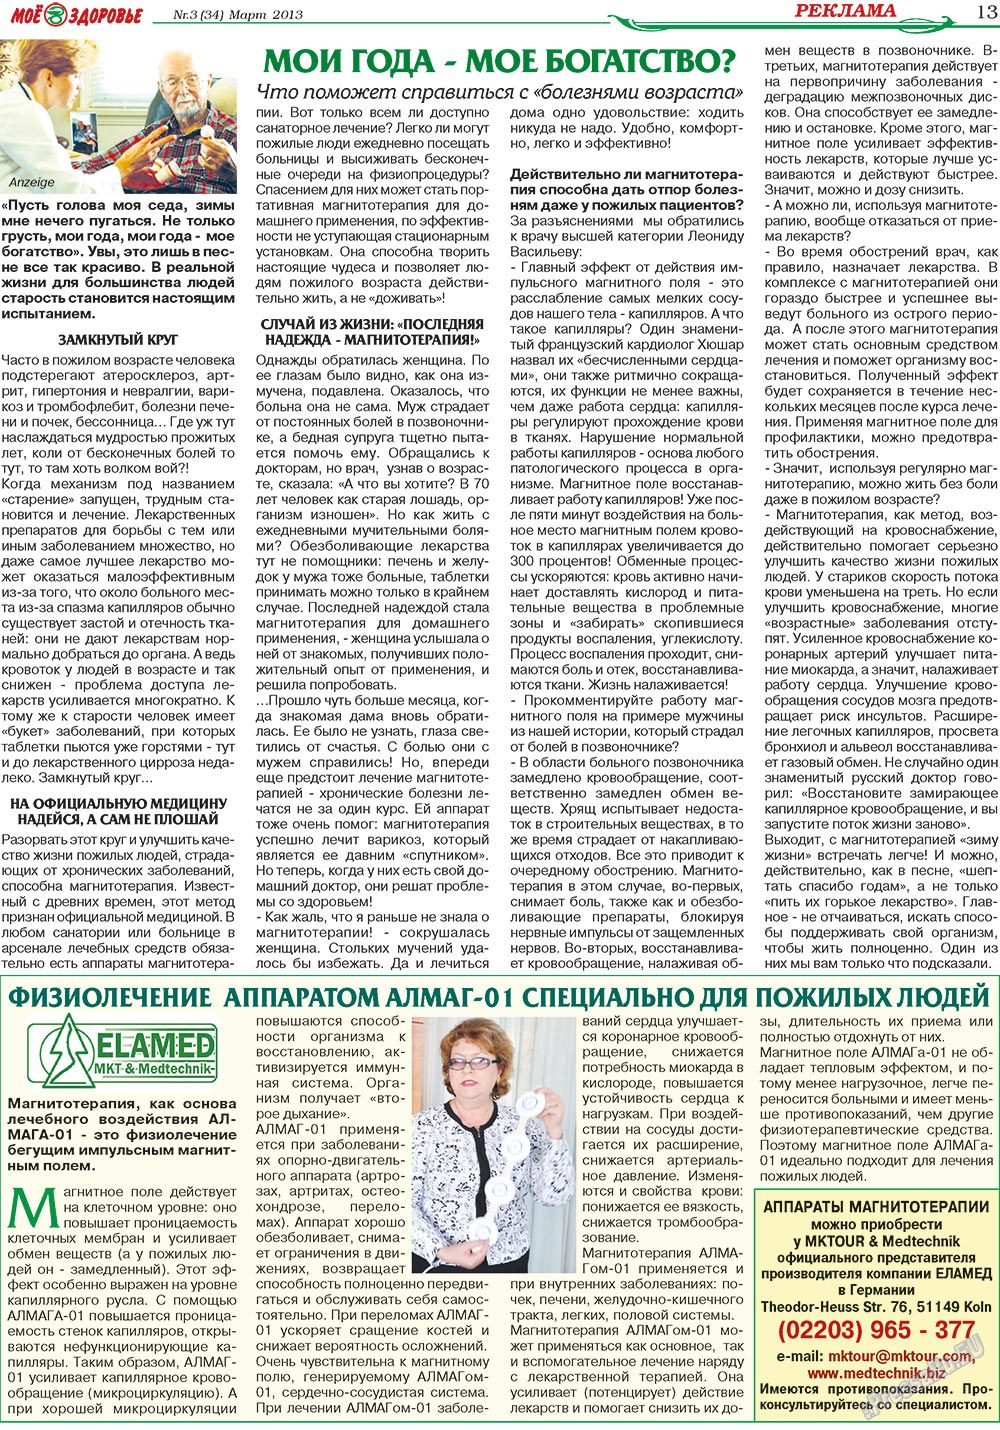 Кругозор, газета. 2013 №3 стр.13